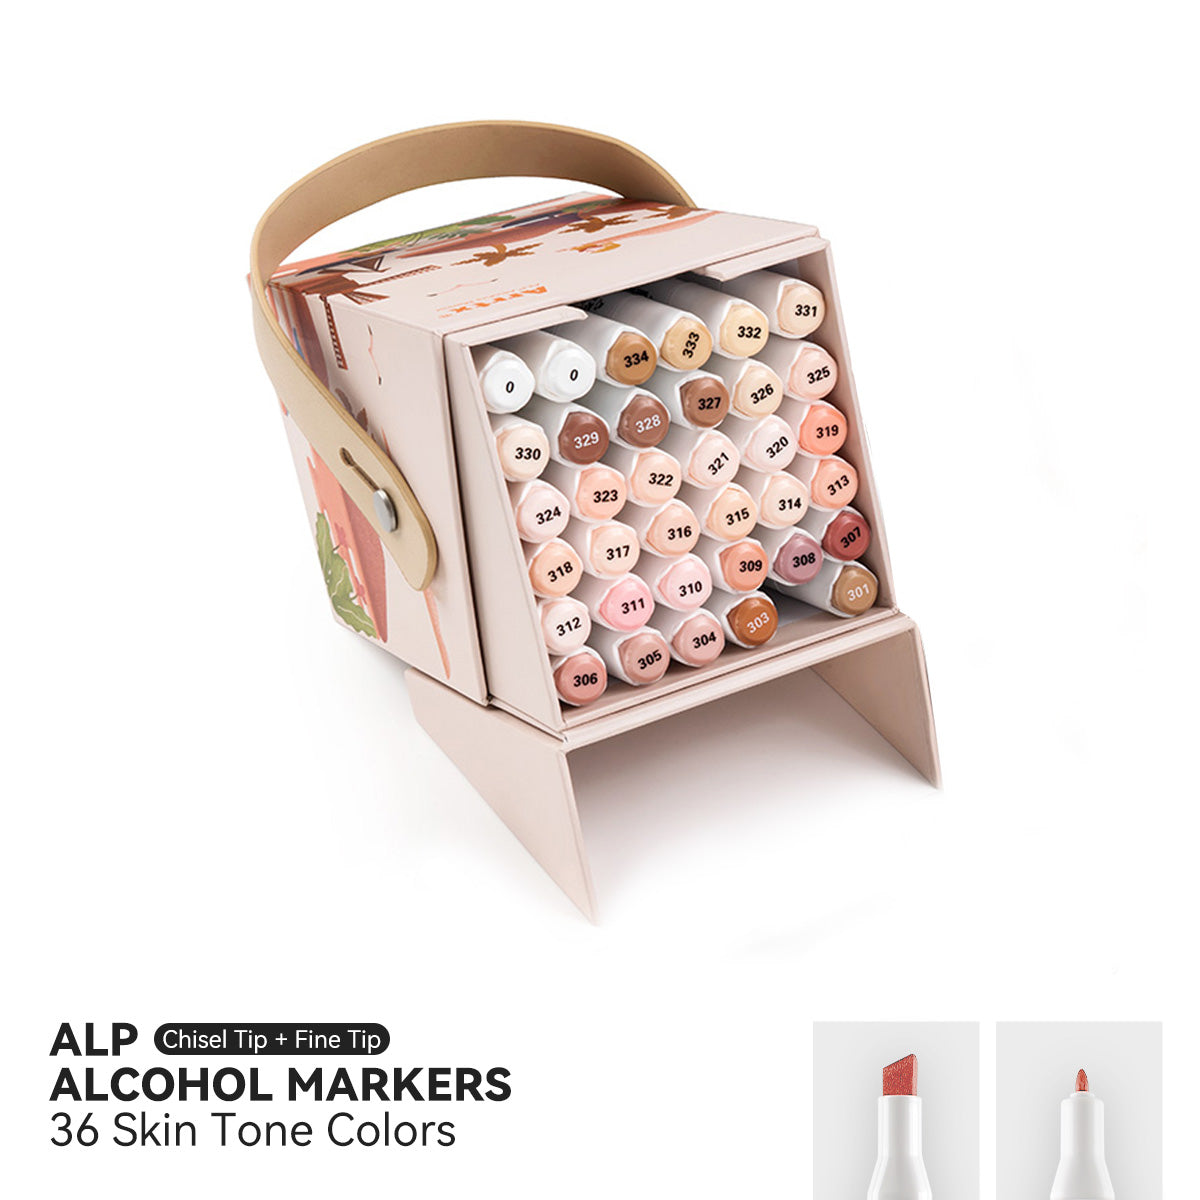 Arrtx ALP 36 Skin Tone Colors Alcohol Paint Markers